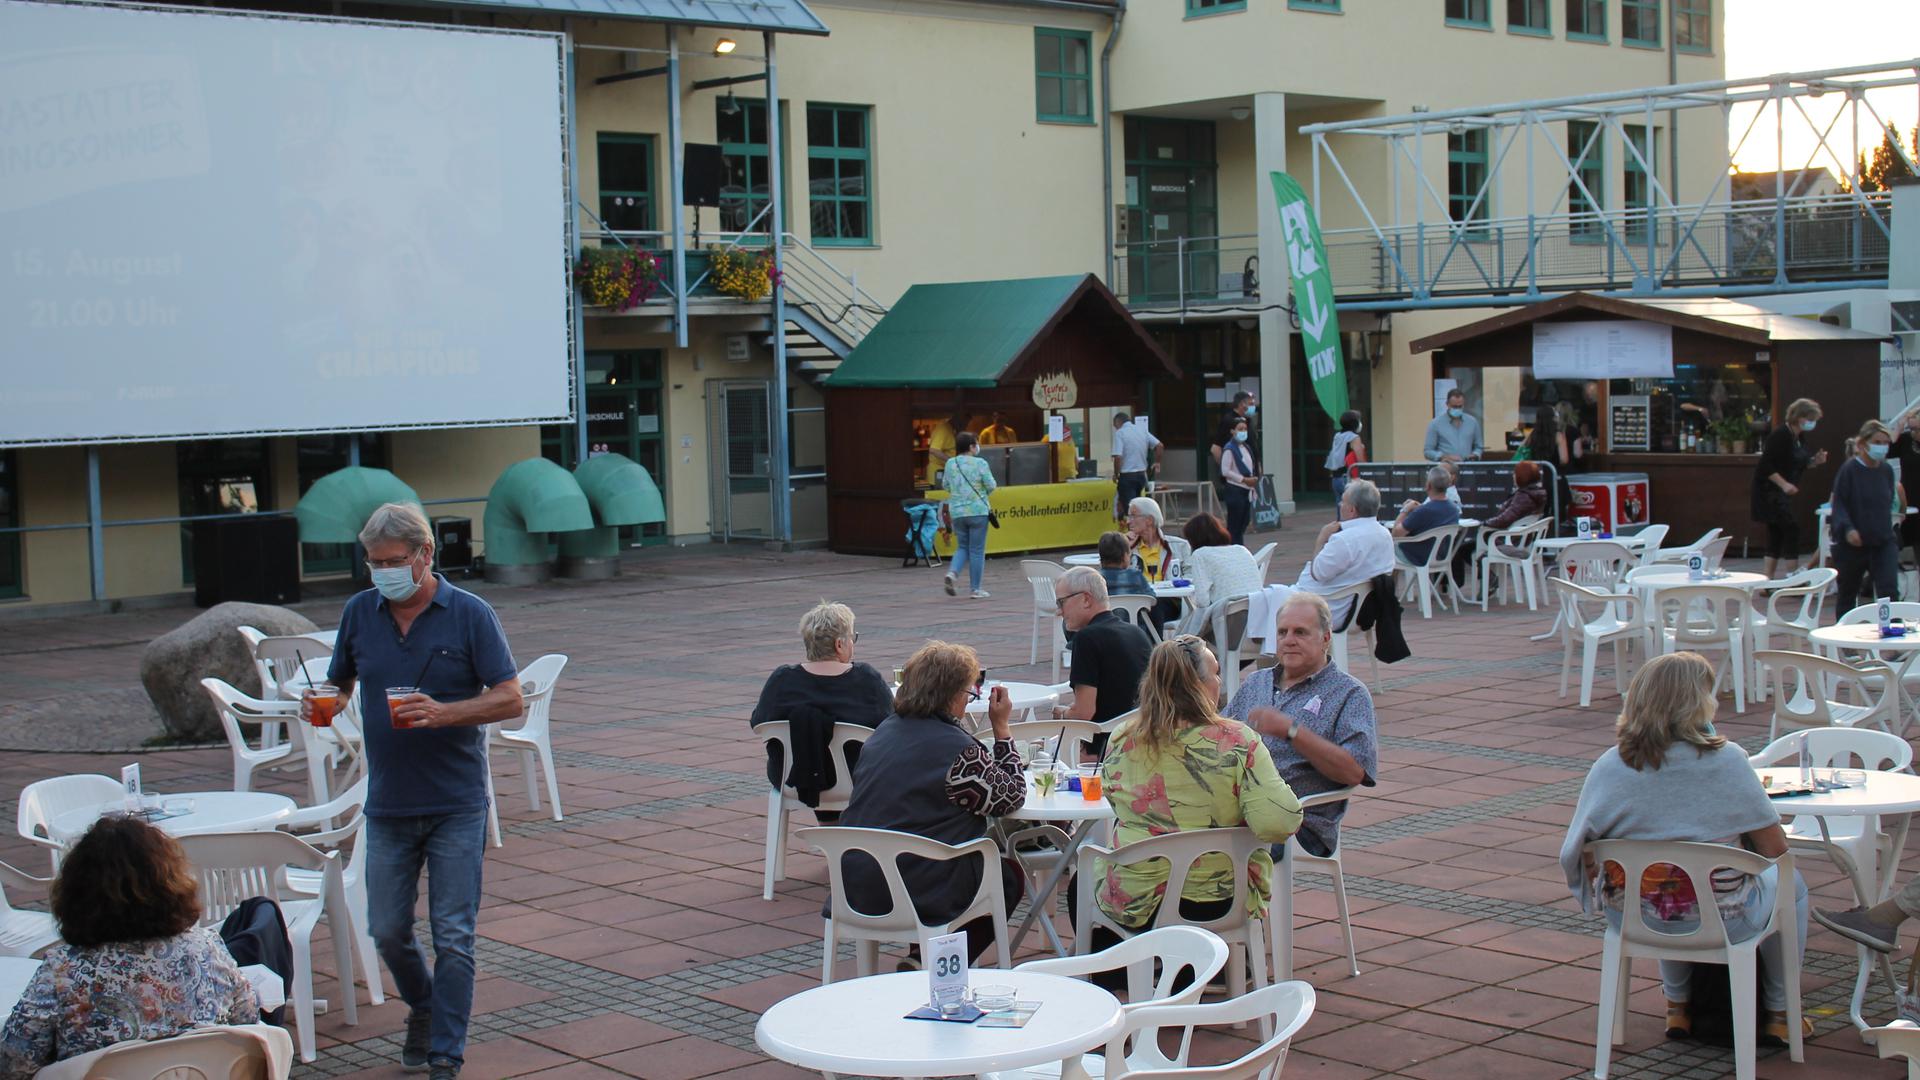 Blick auf eine Freilicht-Kinoleinwand mit Tischen und Menschen davor